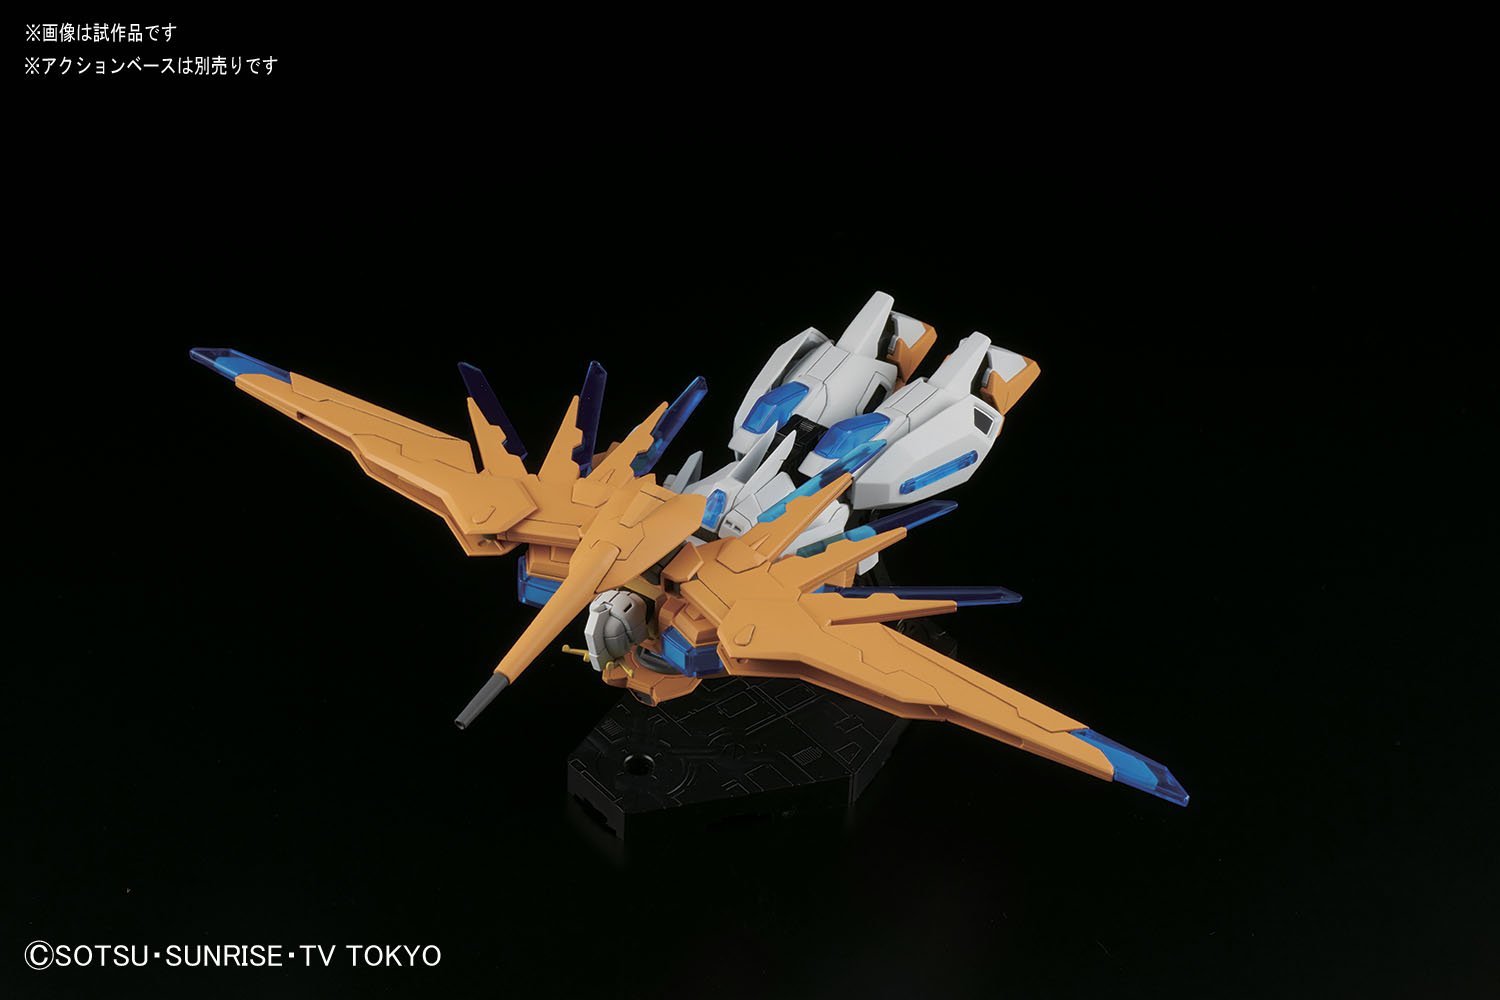 HGBF 047 Scramble Gundam